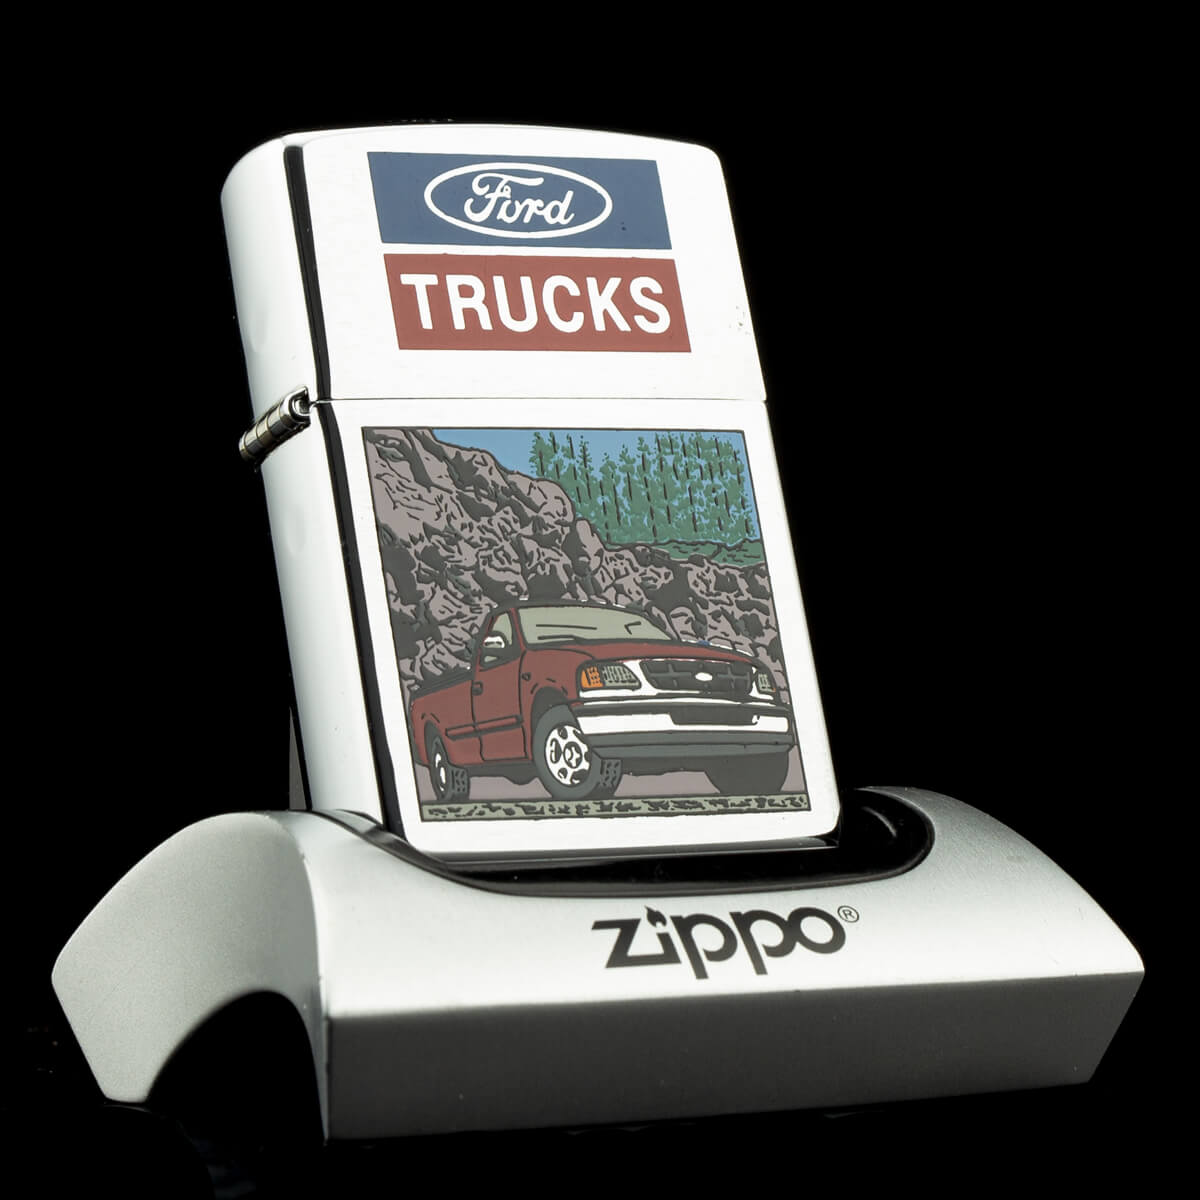 bat-lua-zippo-ford-trucks-xiv-1998-hiem